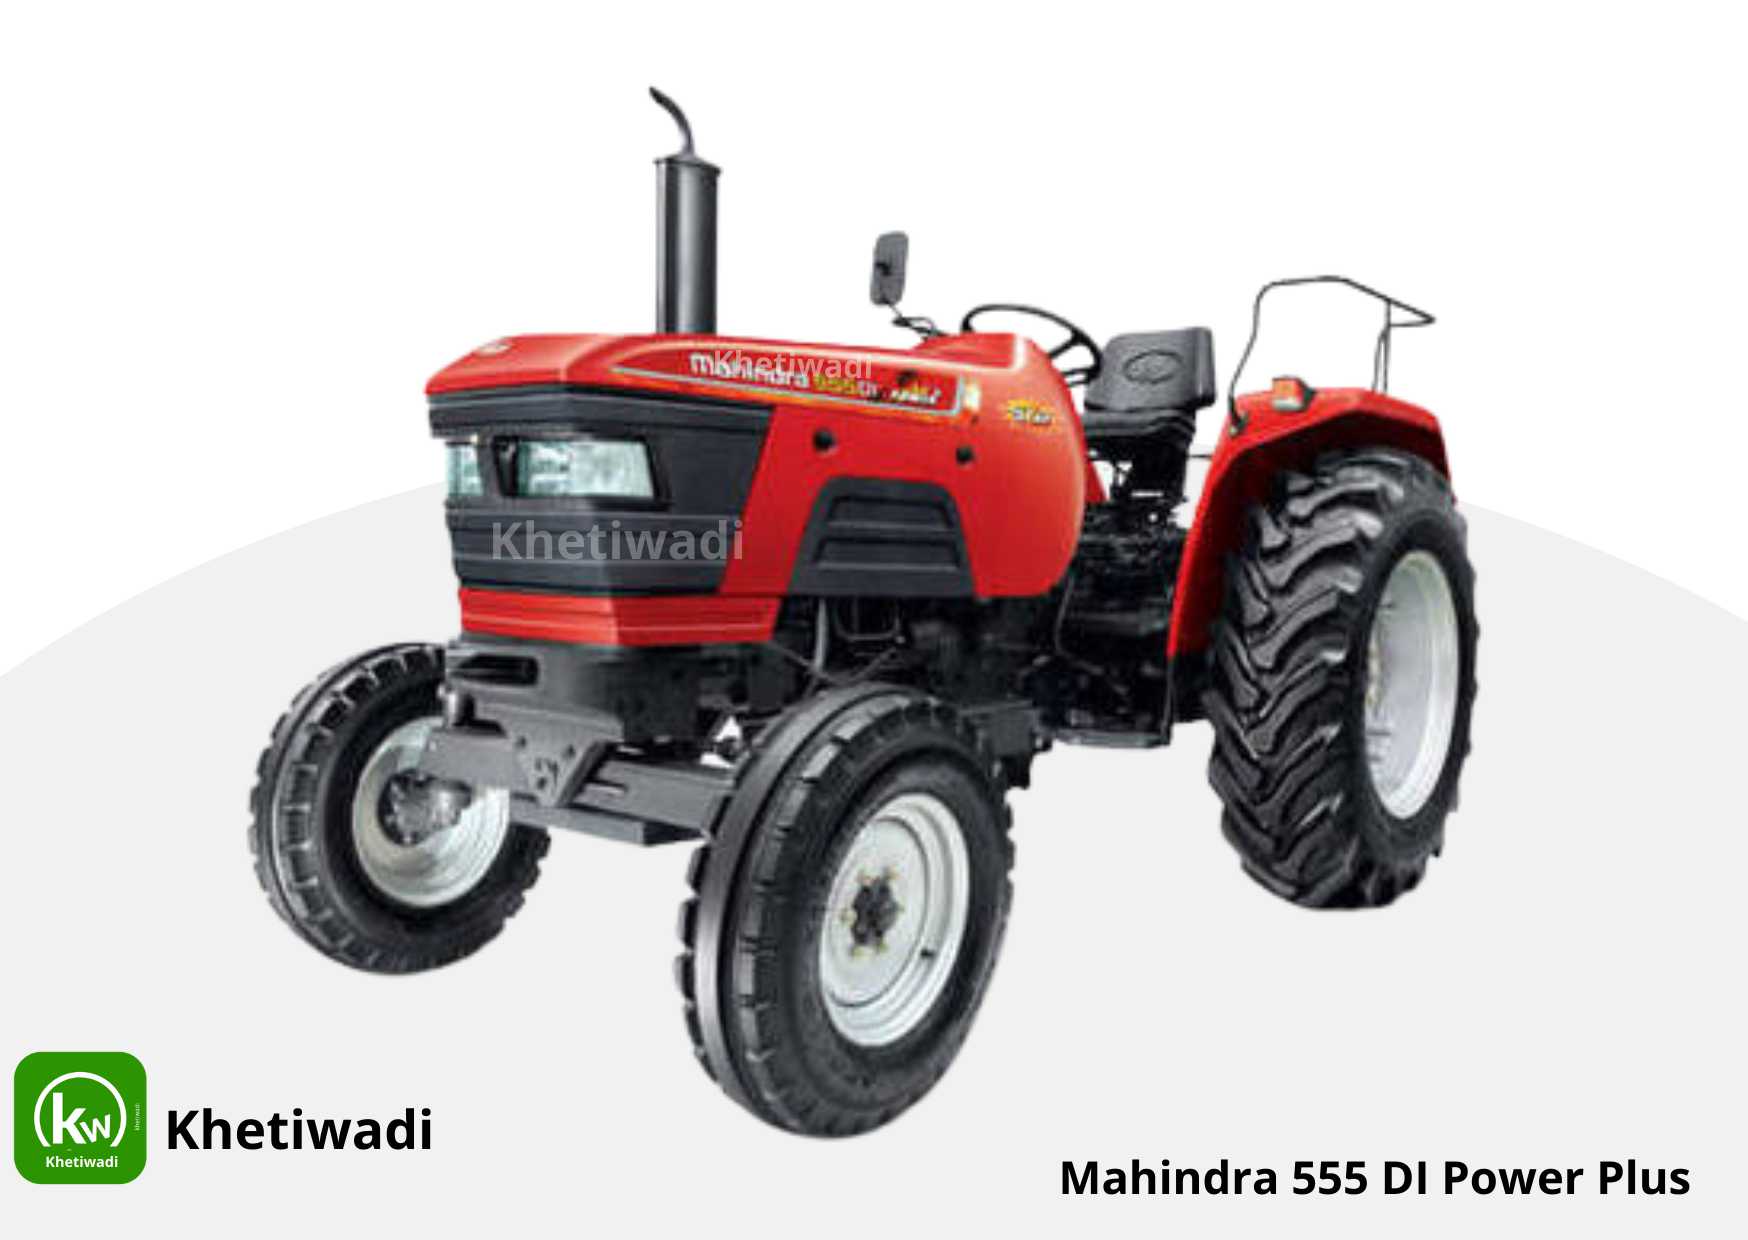 Mahindra 555 DI Power Plus full detail